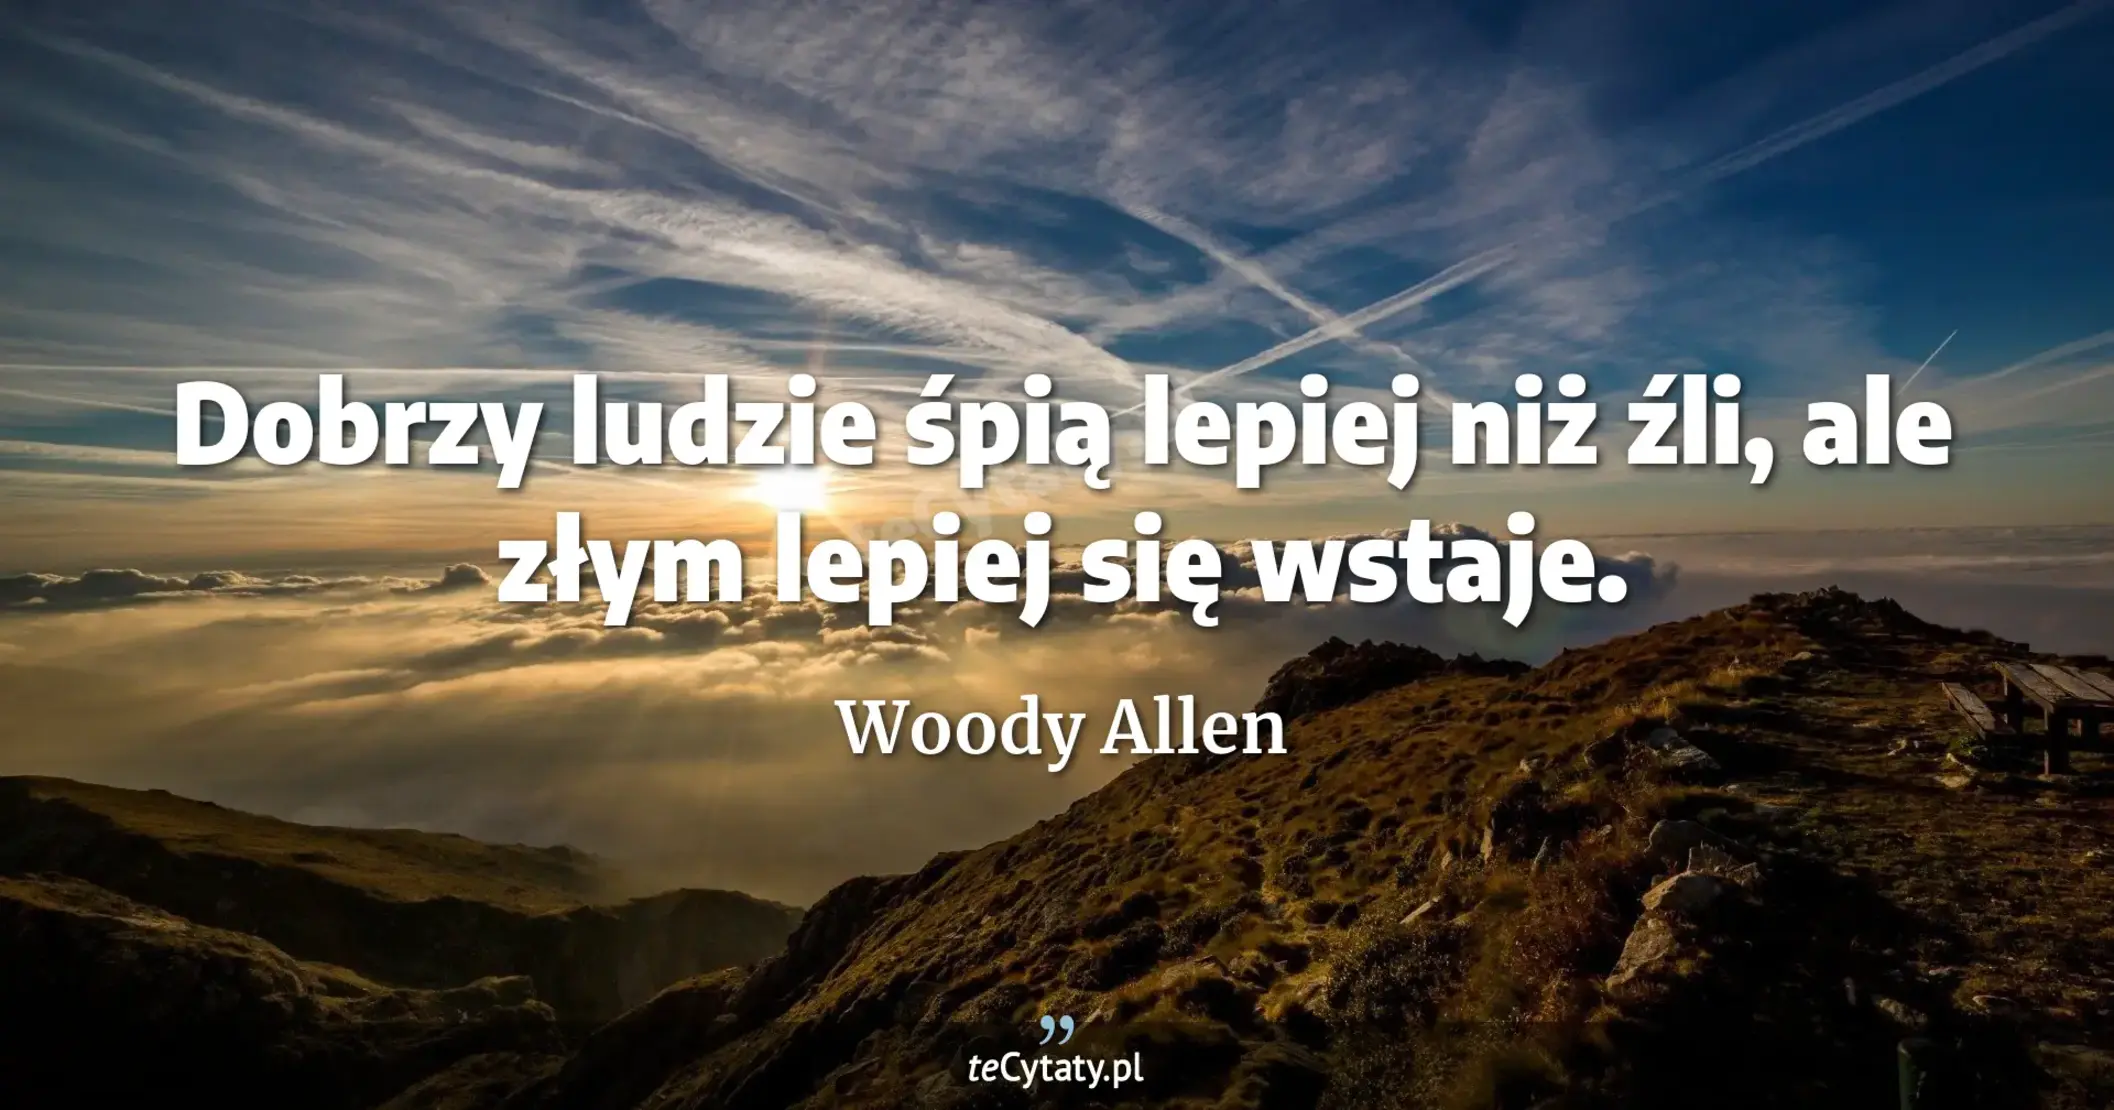 Dobrzy ludzie śpią lepiej niż źli, ale złym lepiej się wstaje. - Woody Allen